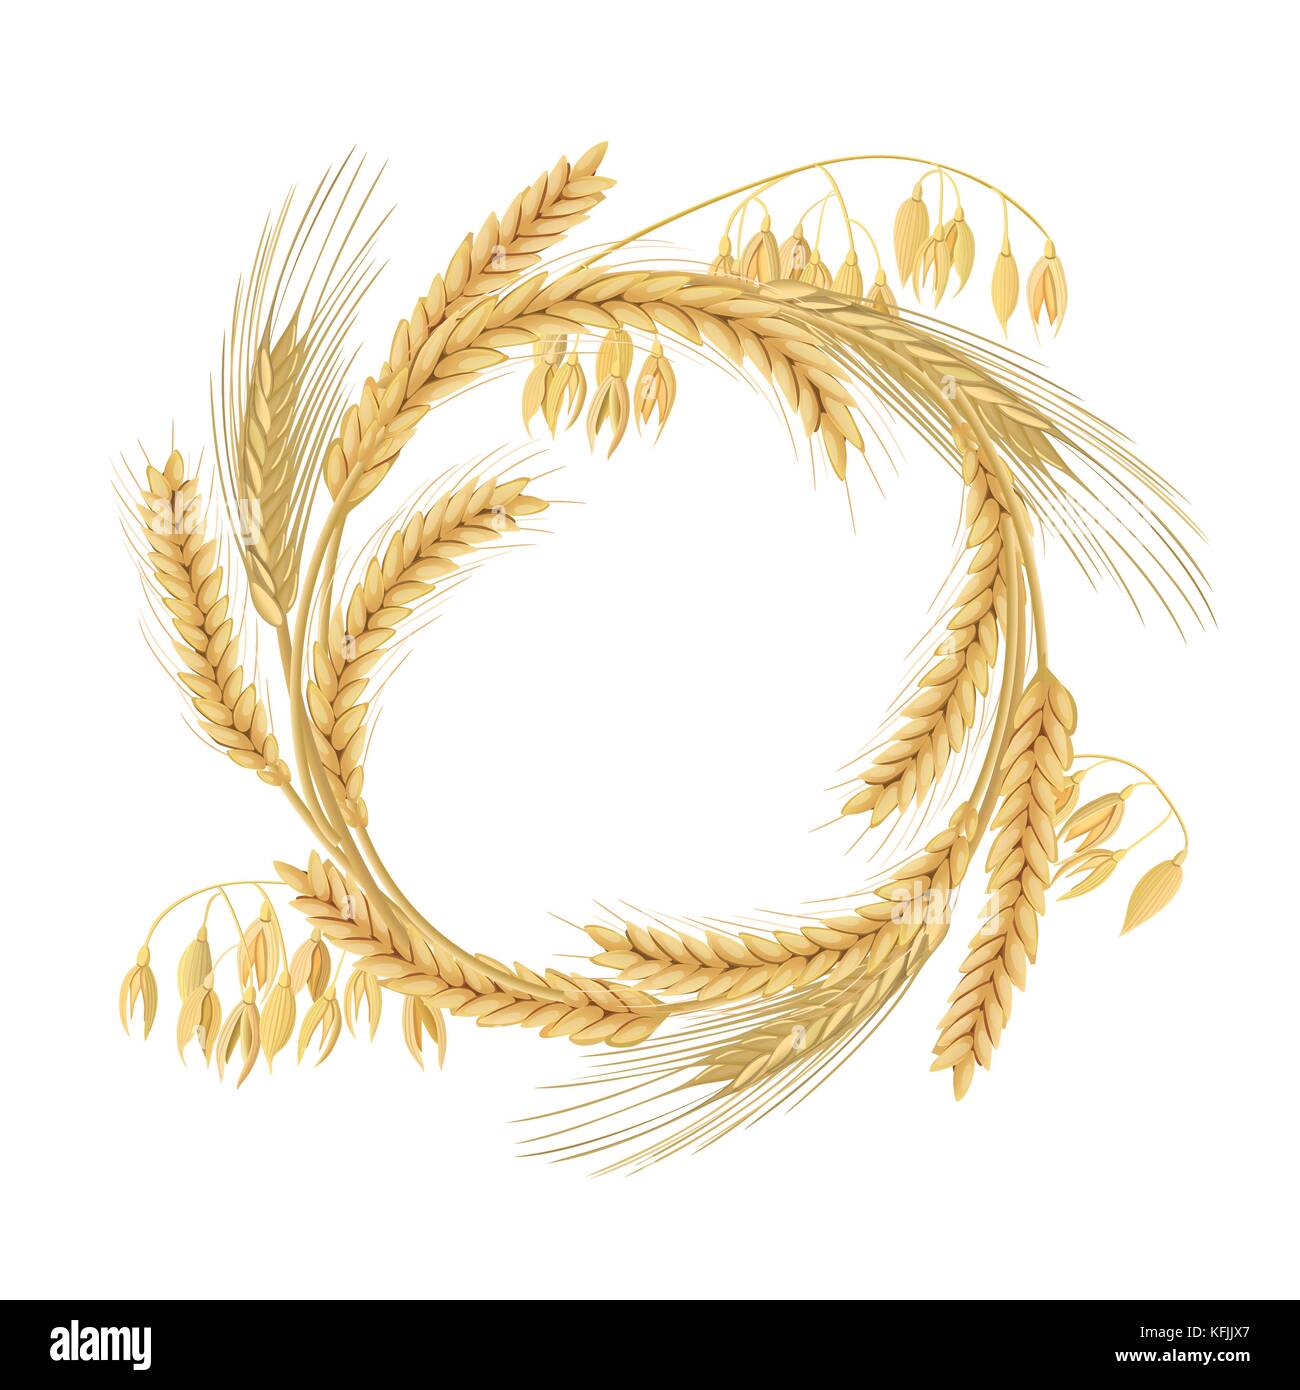 Kranz aus Weizen, Gerste, Hafer und Roggen Spikes. Vier Getreide Körner mit Ohren, und freier Speicherplatz Stock Vektor